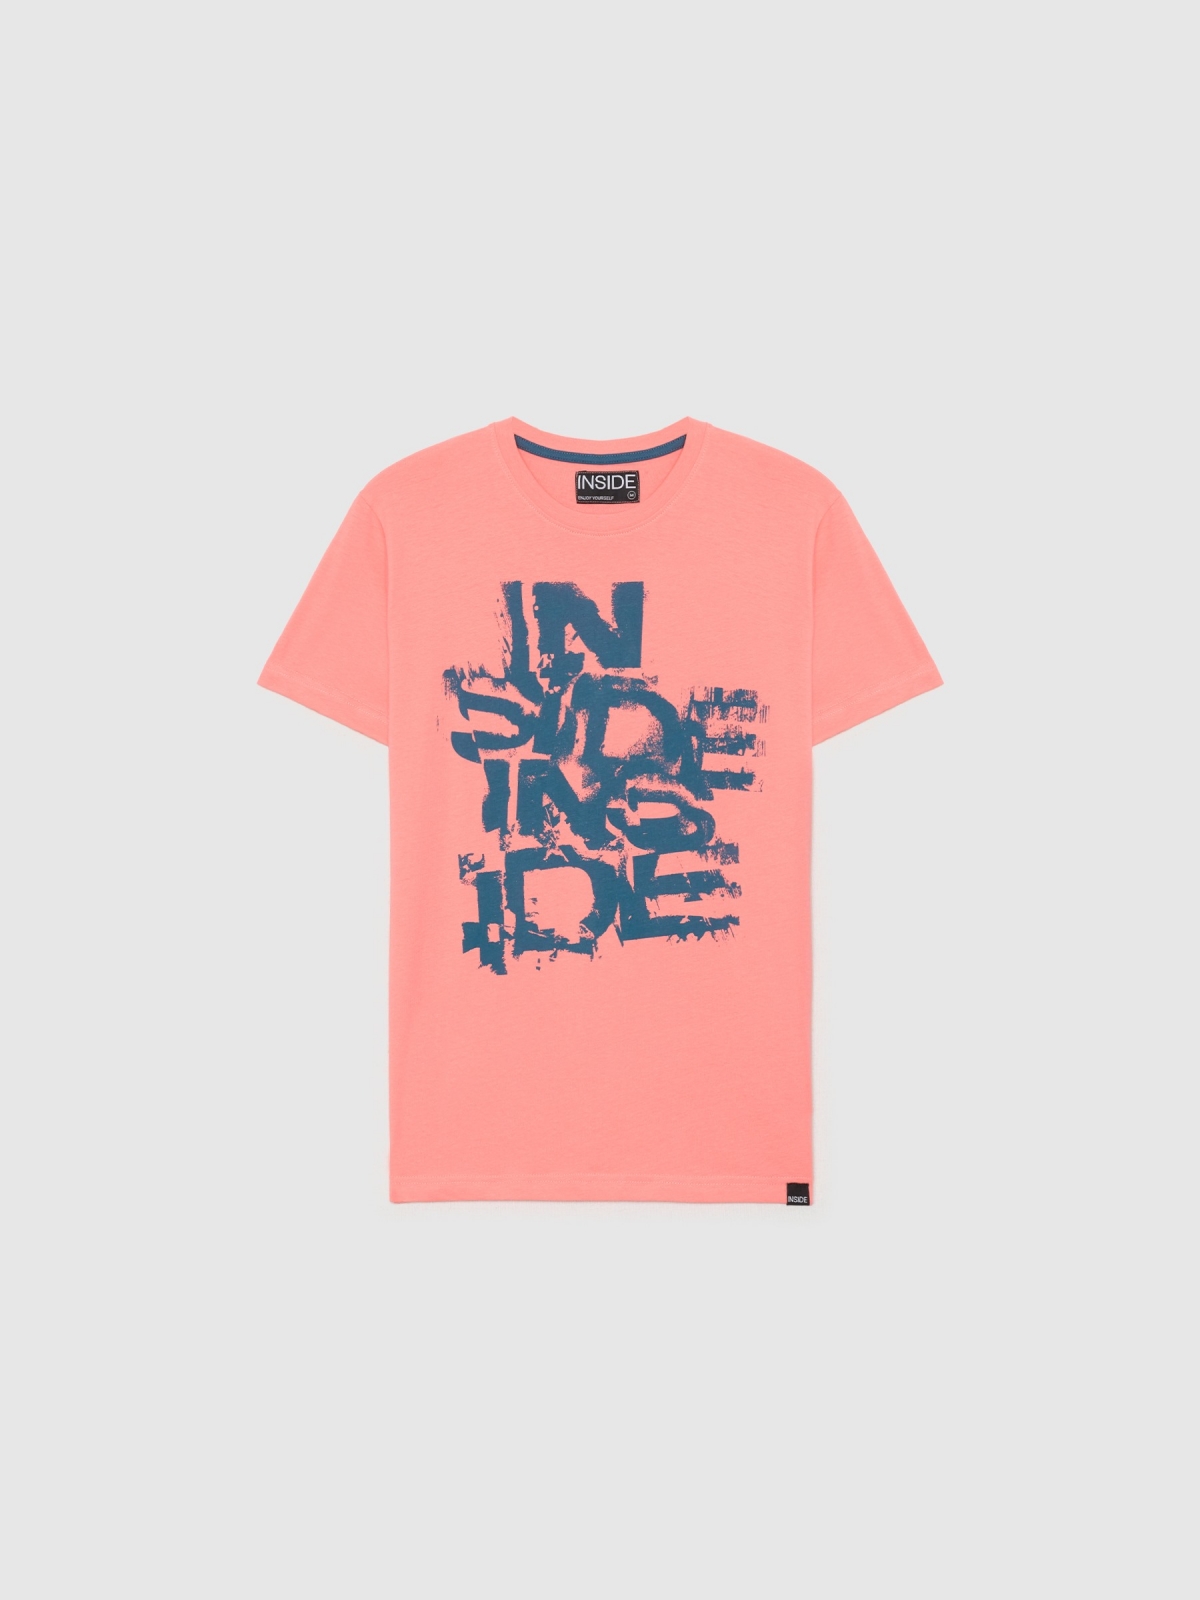  INSIDE logo T-shirt pink